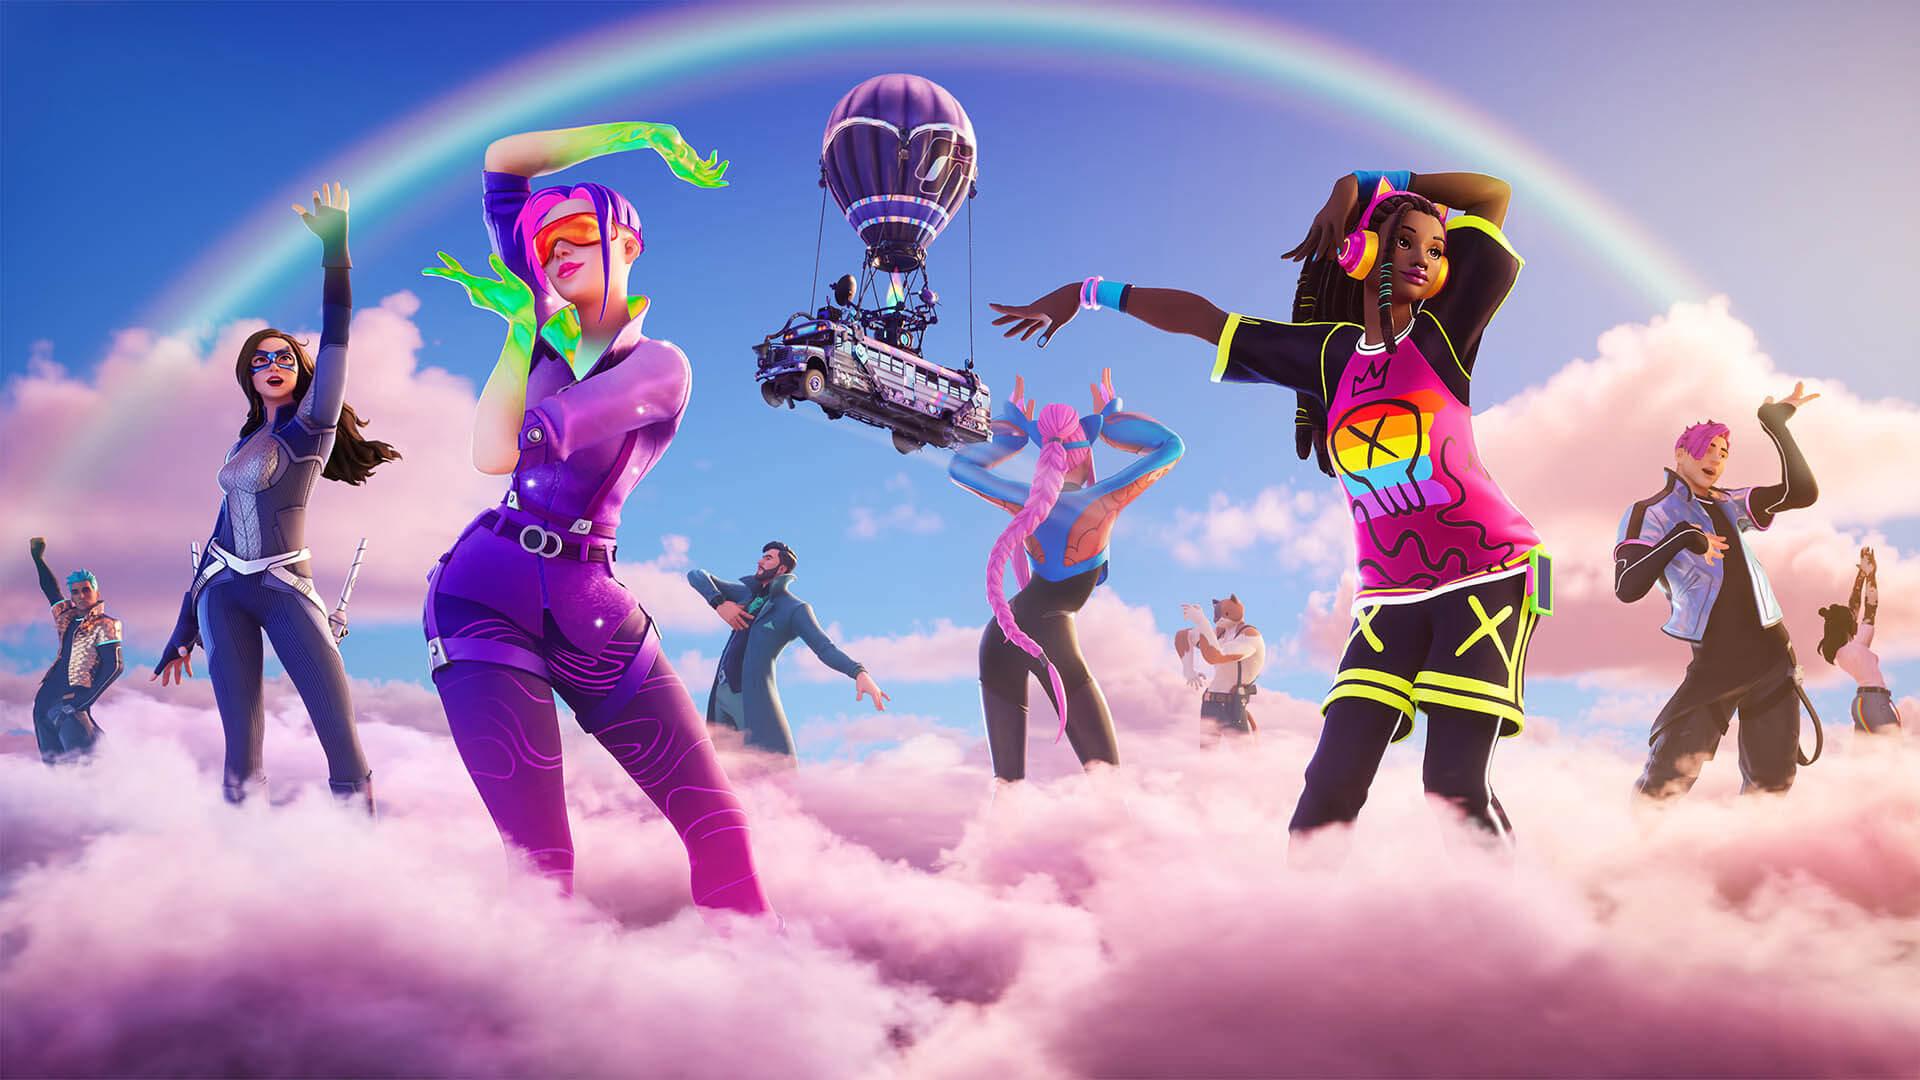 Werbekunst mit Regenbogen-Avataren, die auf rosa Wolken tanzen.